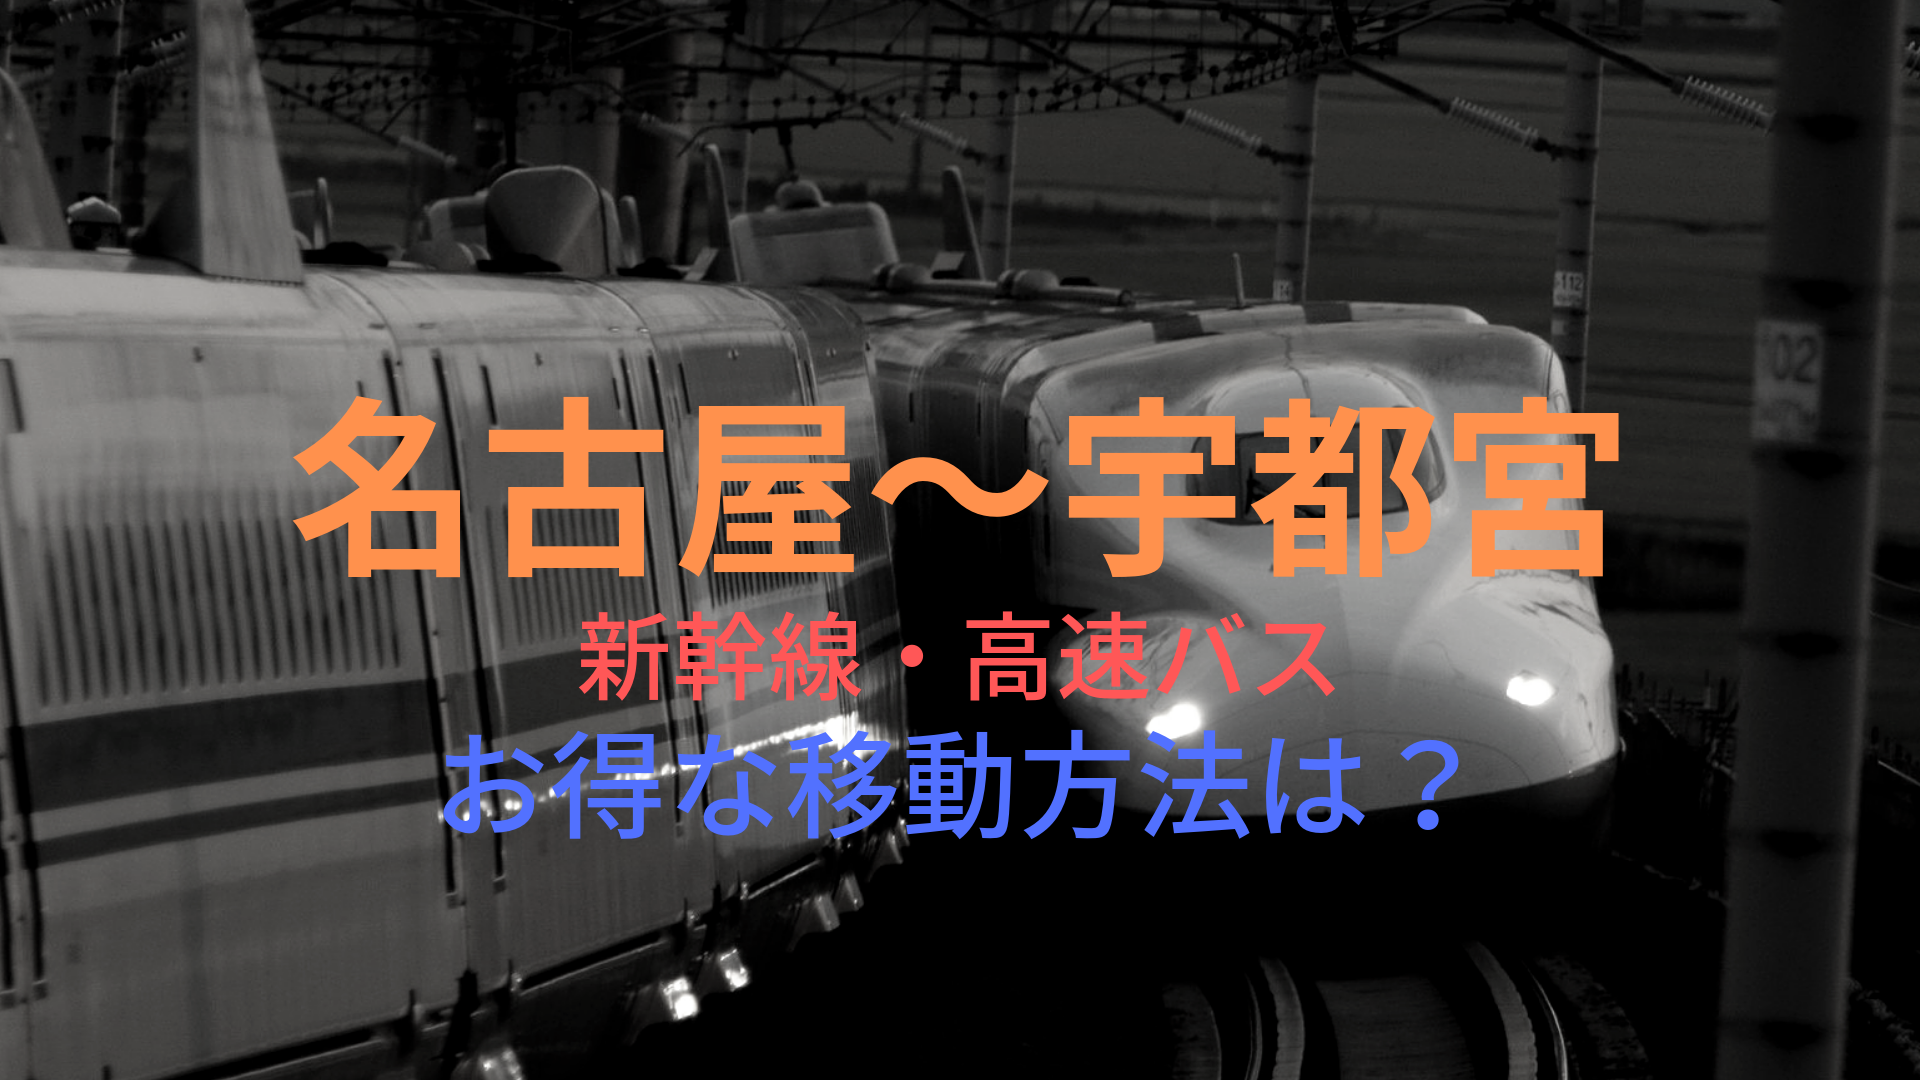 名古屋 宇都宮 8130円 格安で移動する方法は 新幹線 高速バスをそれぞれ比較 ばしたく交通